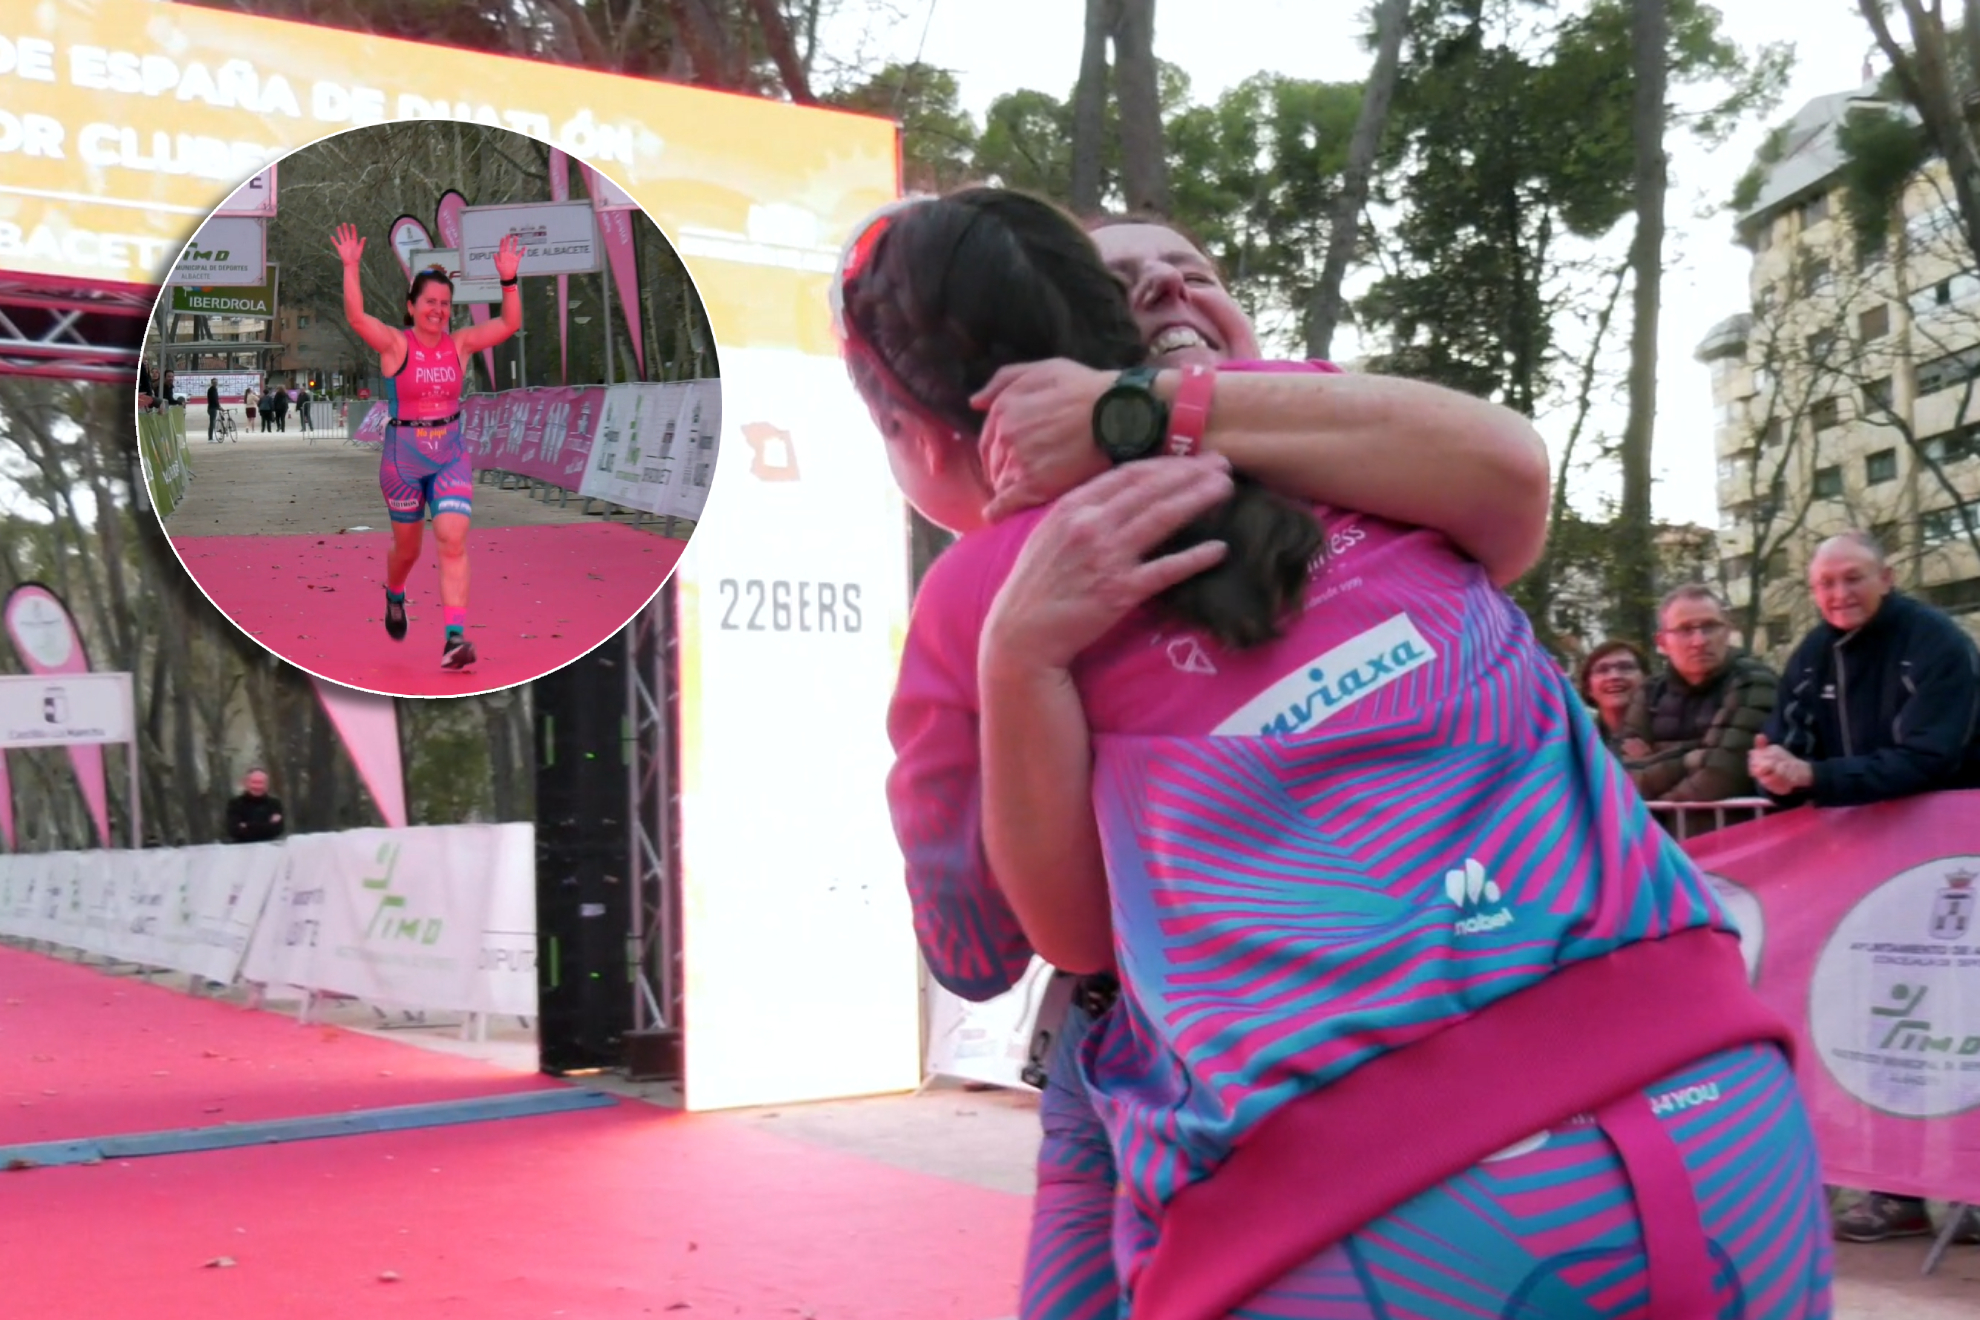 El emocionante recibimiento de una hija a una madre tras llegar última en un triatlón